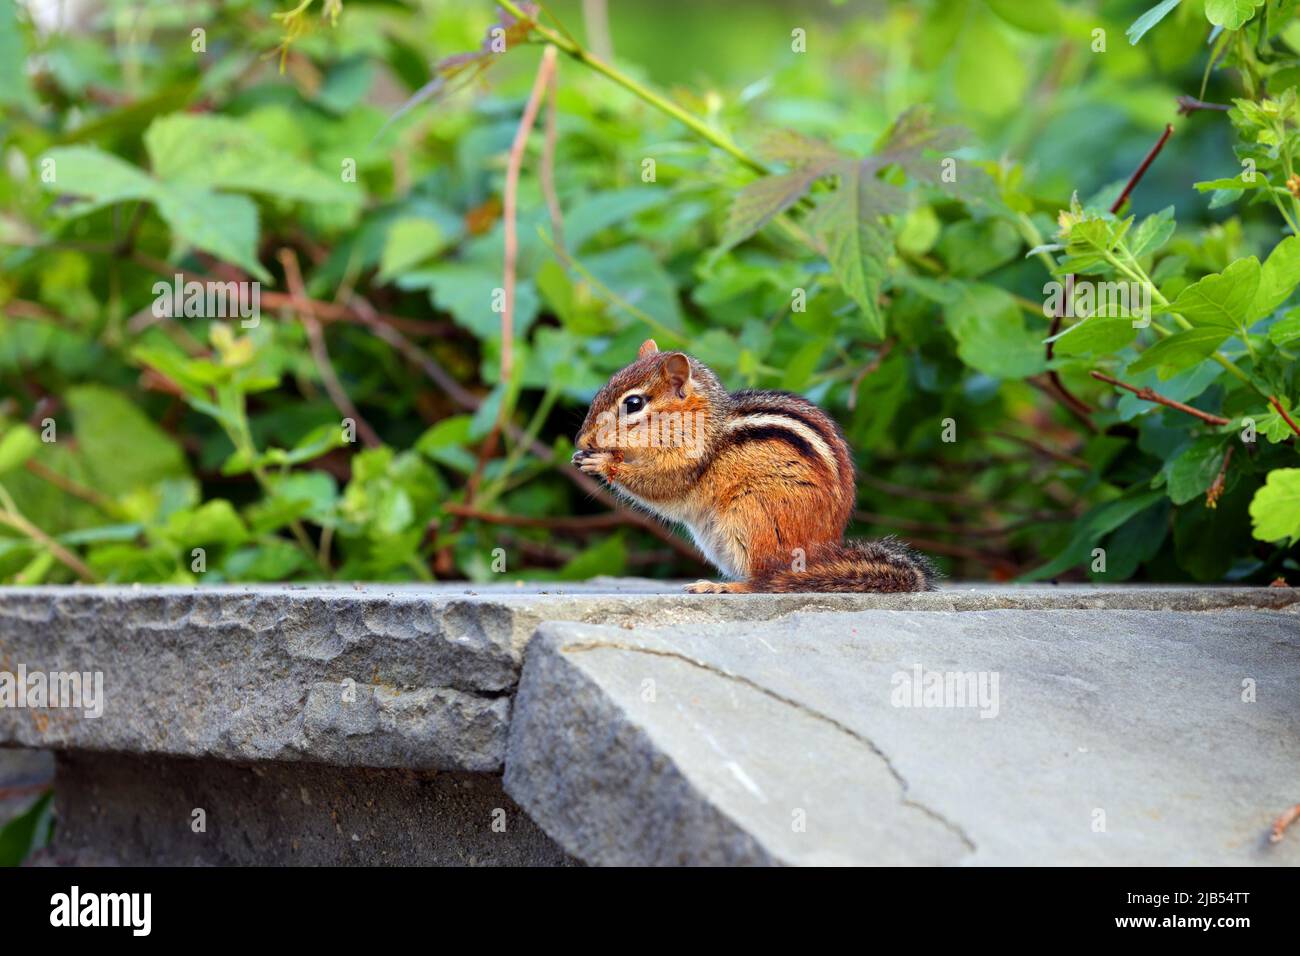 Un Chipmunk de l'est, Tamias striatus, sur ses pattes arrière, manger quelque chose, Central Park, New York. Banque D'Images